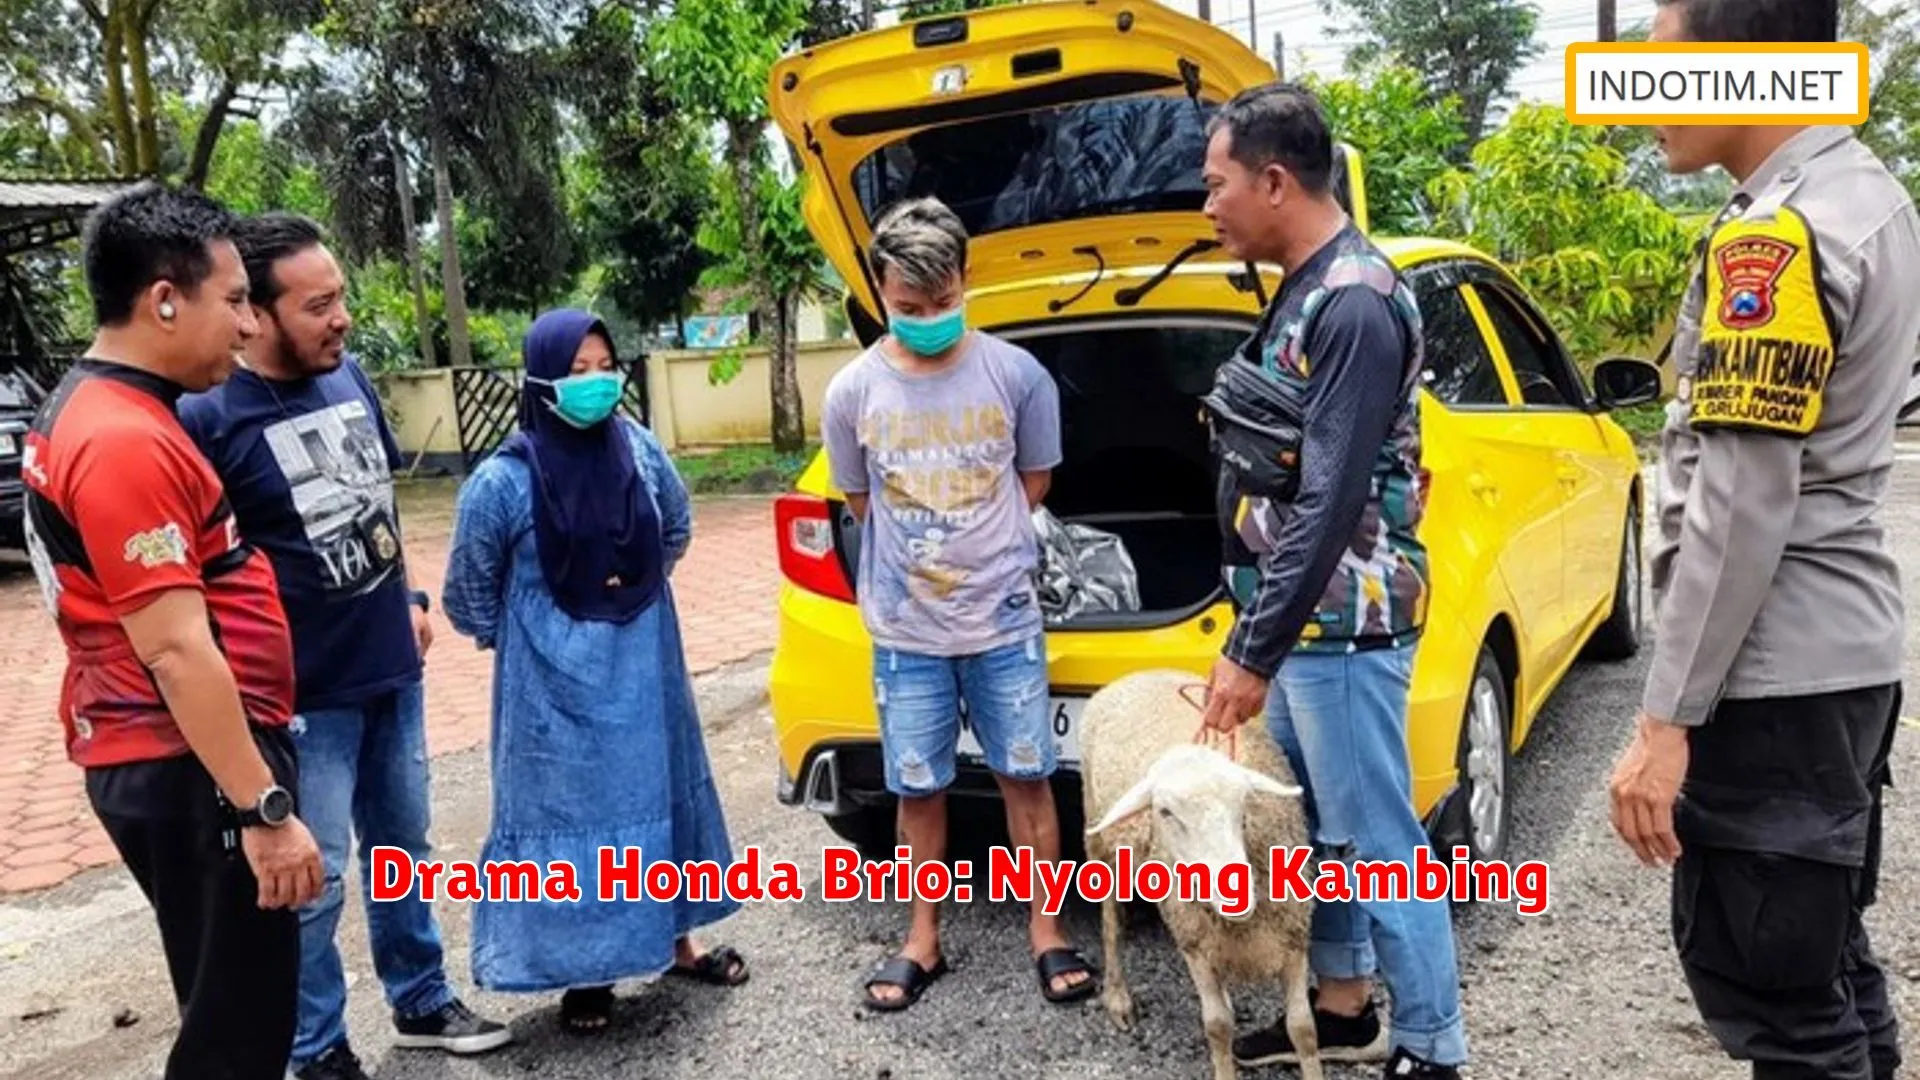 Drama Honda Brio: Nyolong Kambing